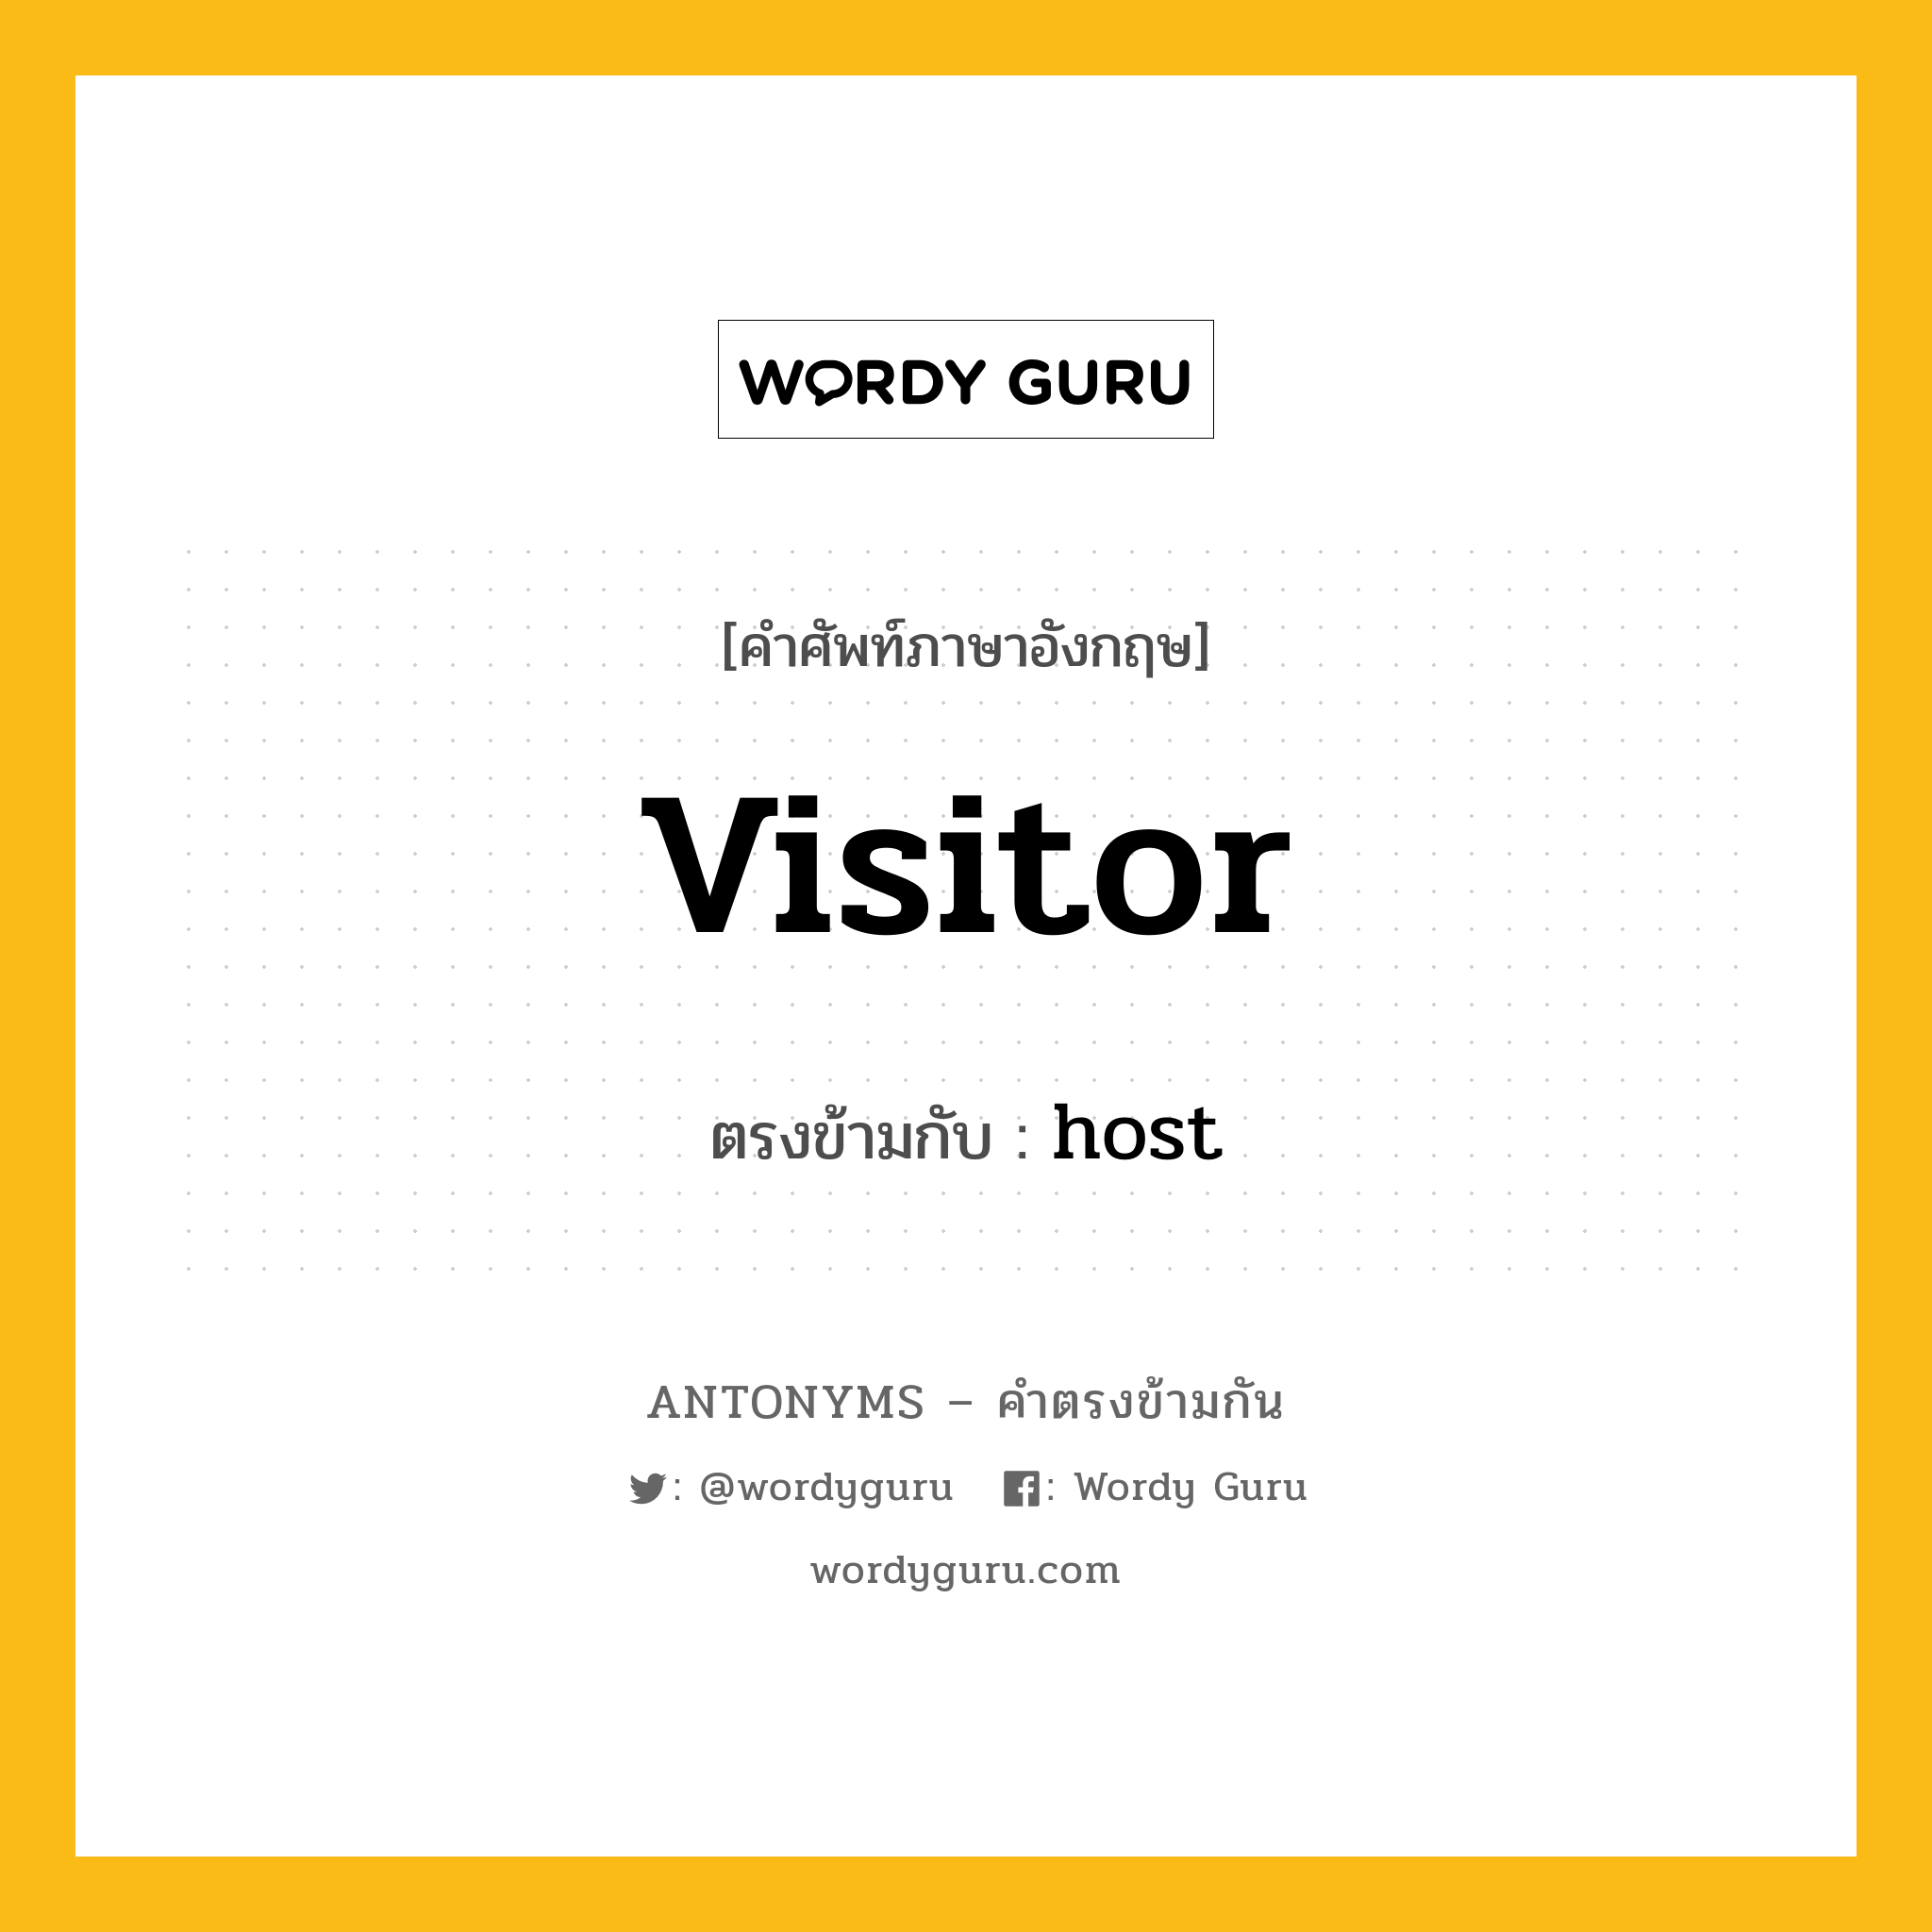 visitor เป็นคำตรงข้ามกับคำไหนบ้าง?, คำศัพท์ภาษาอังกฤษ visitor ตรงข้ามกับ host หมวด host